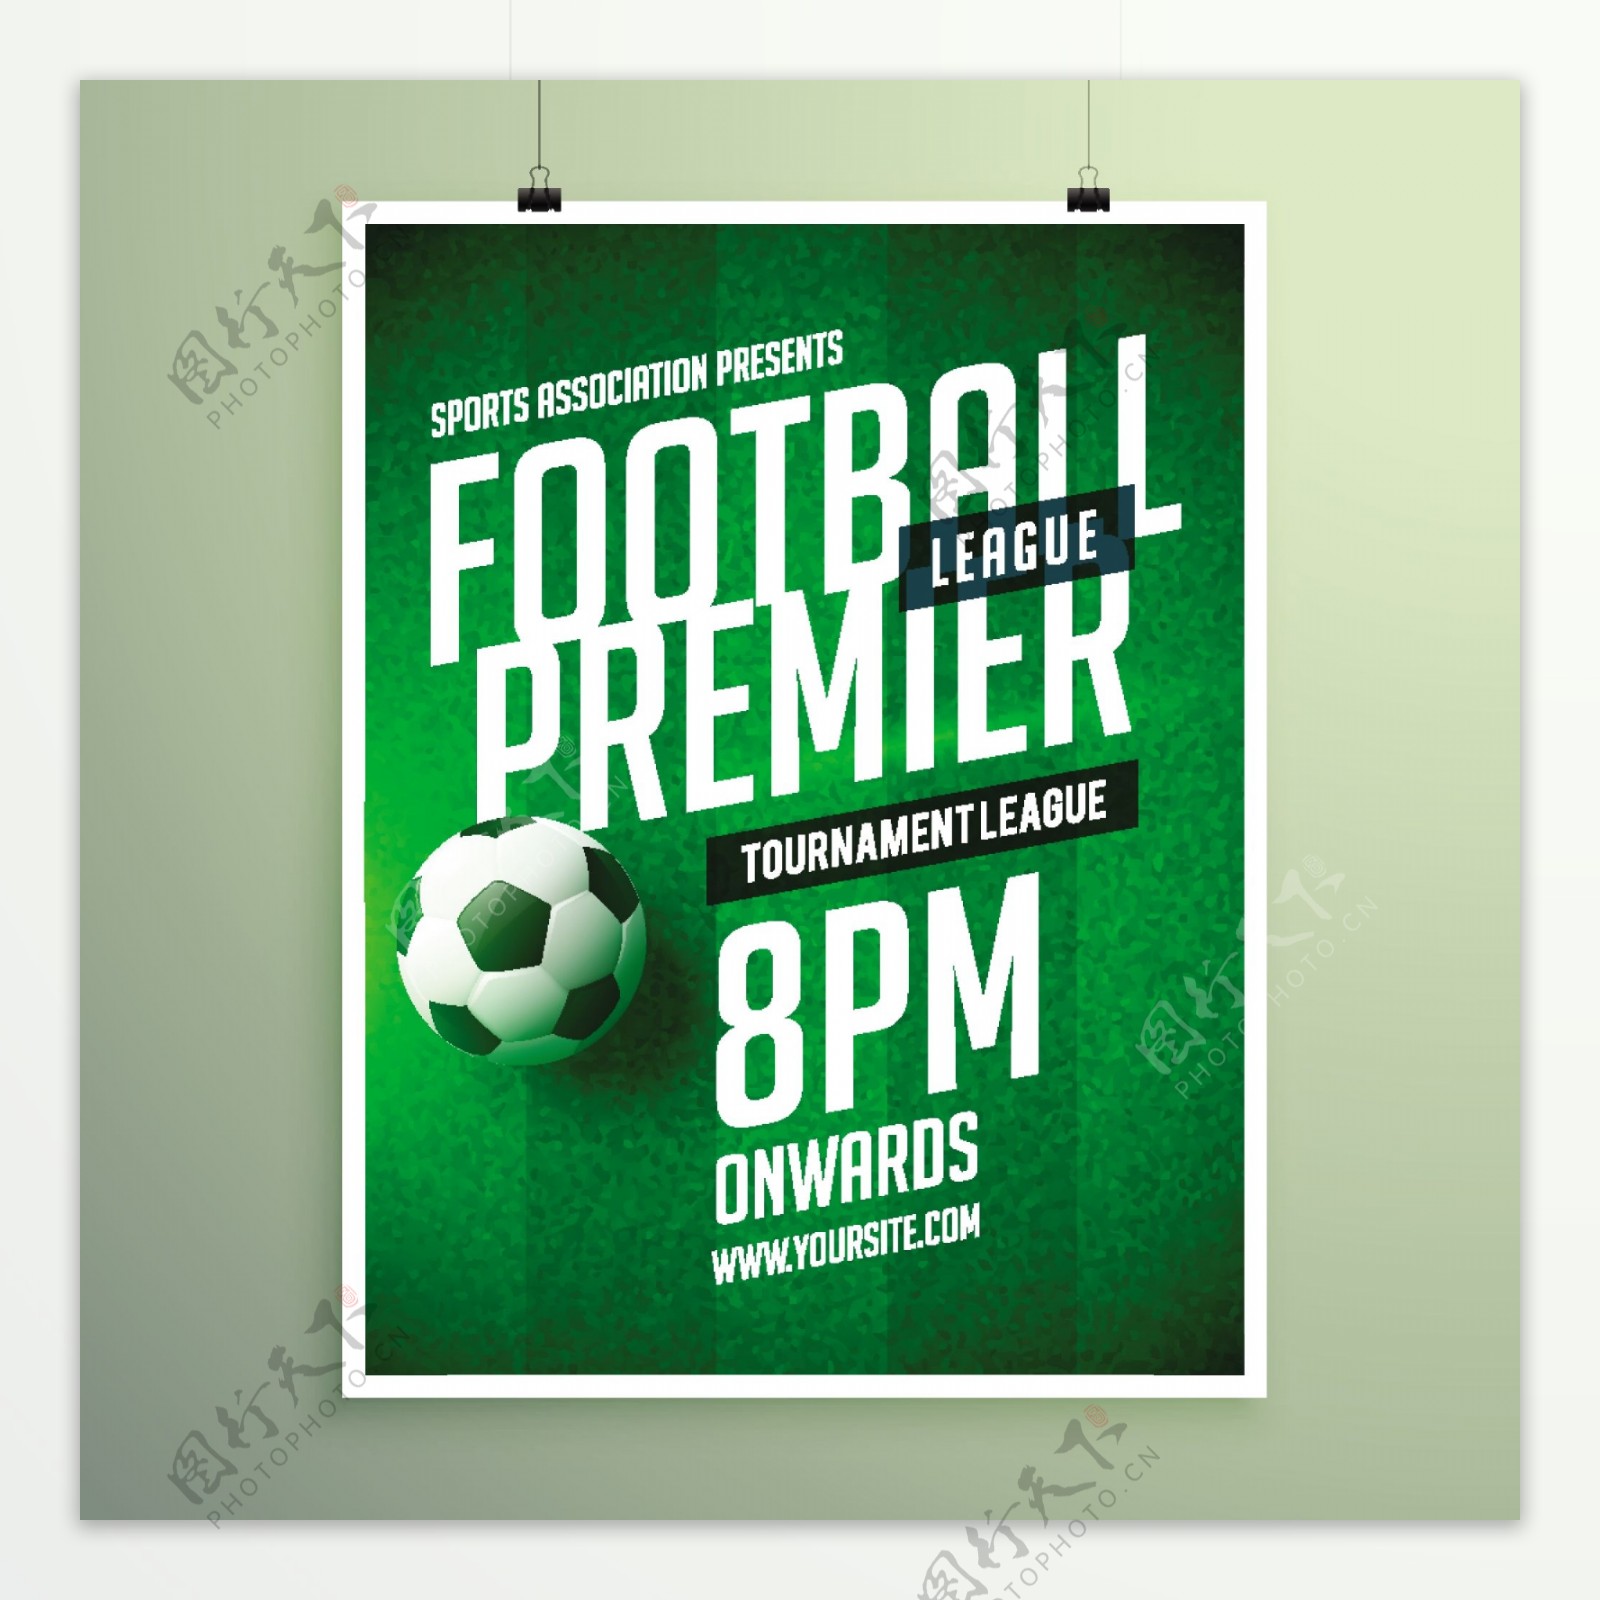 绿色背景英文字母足球海报